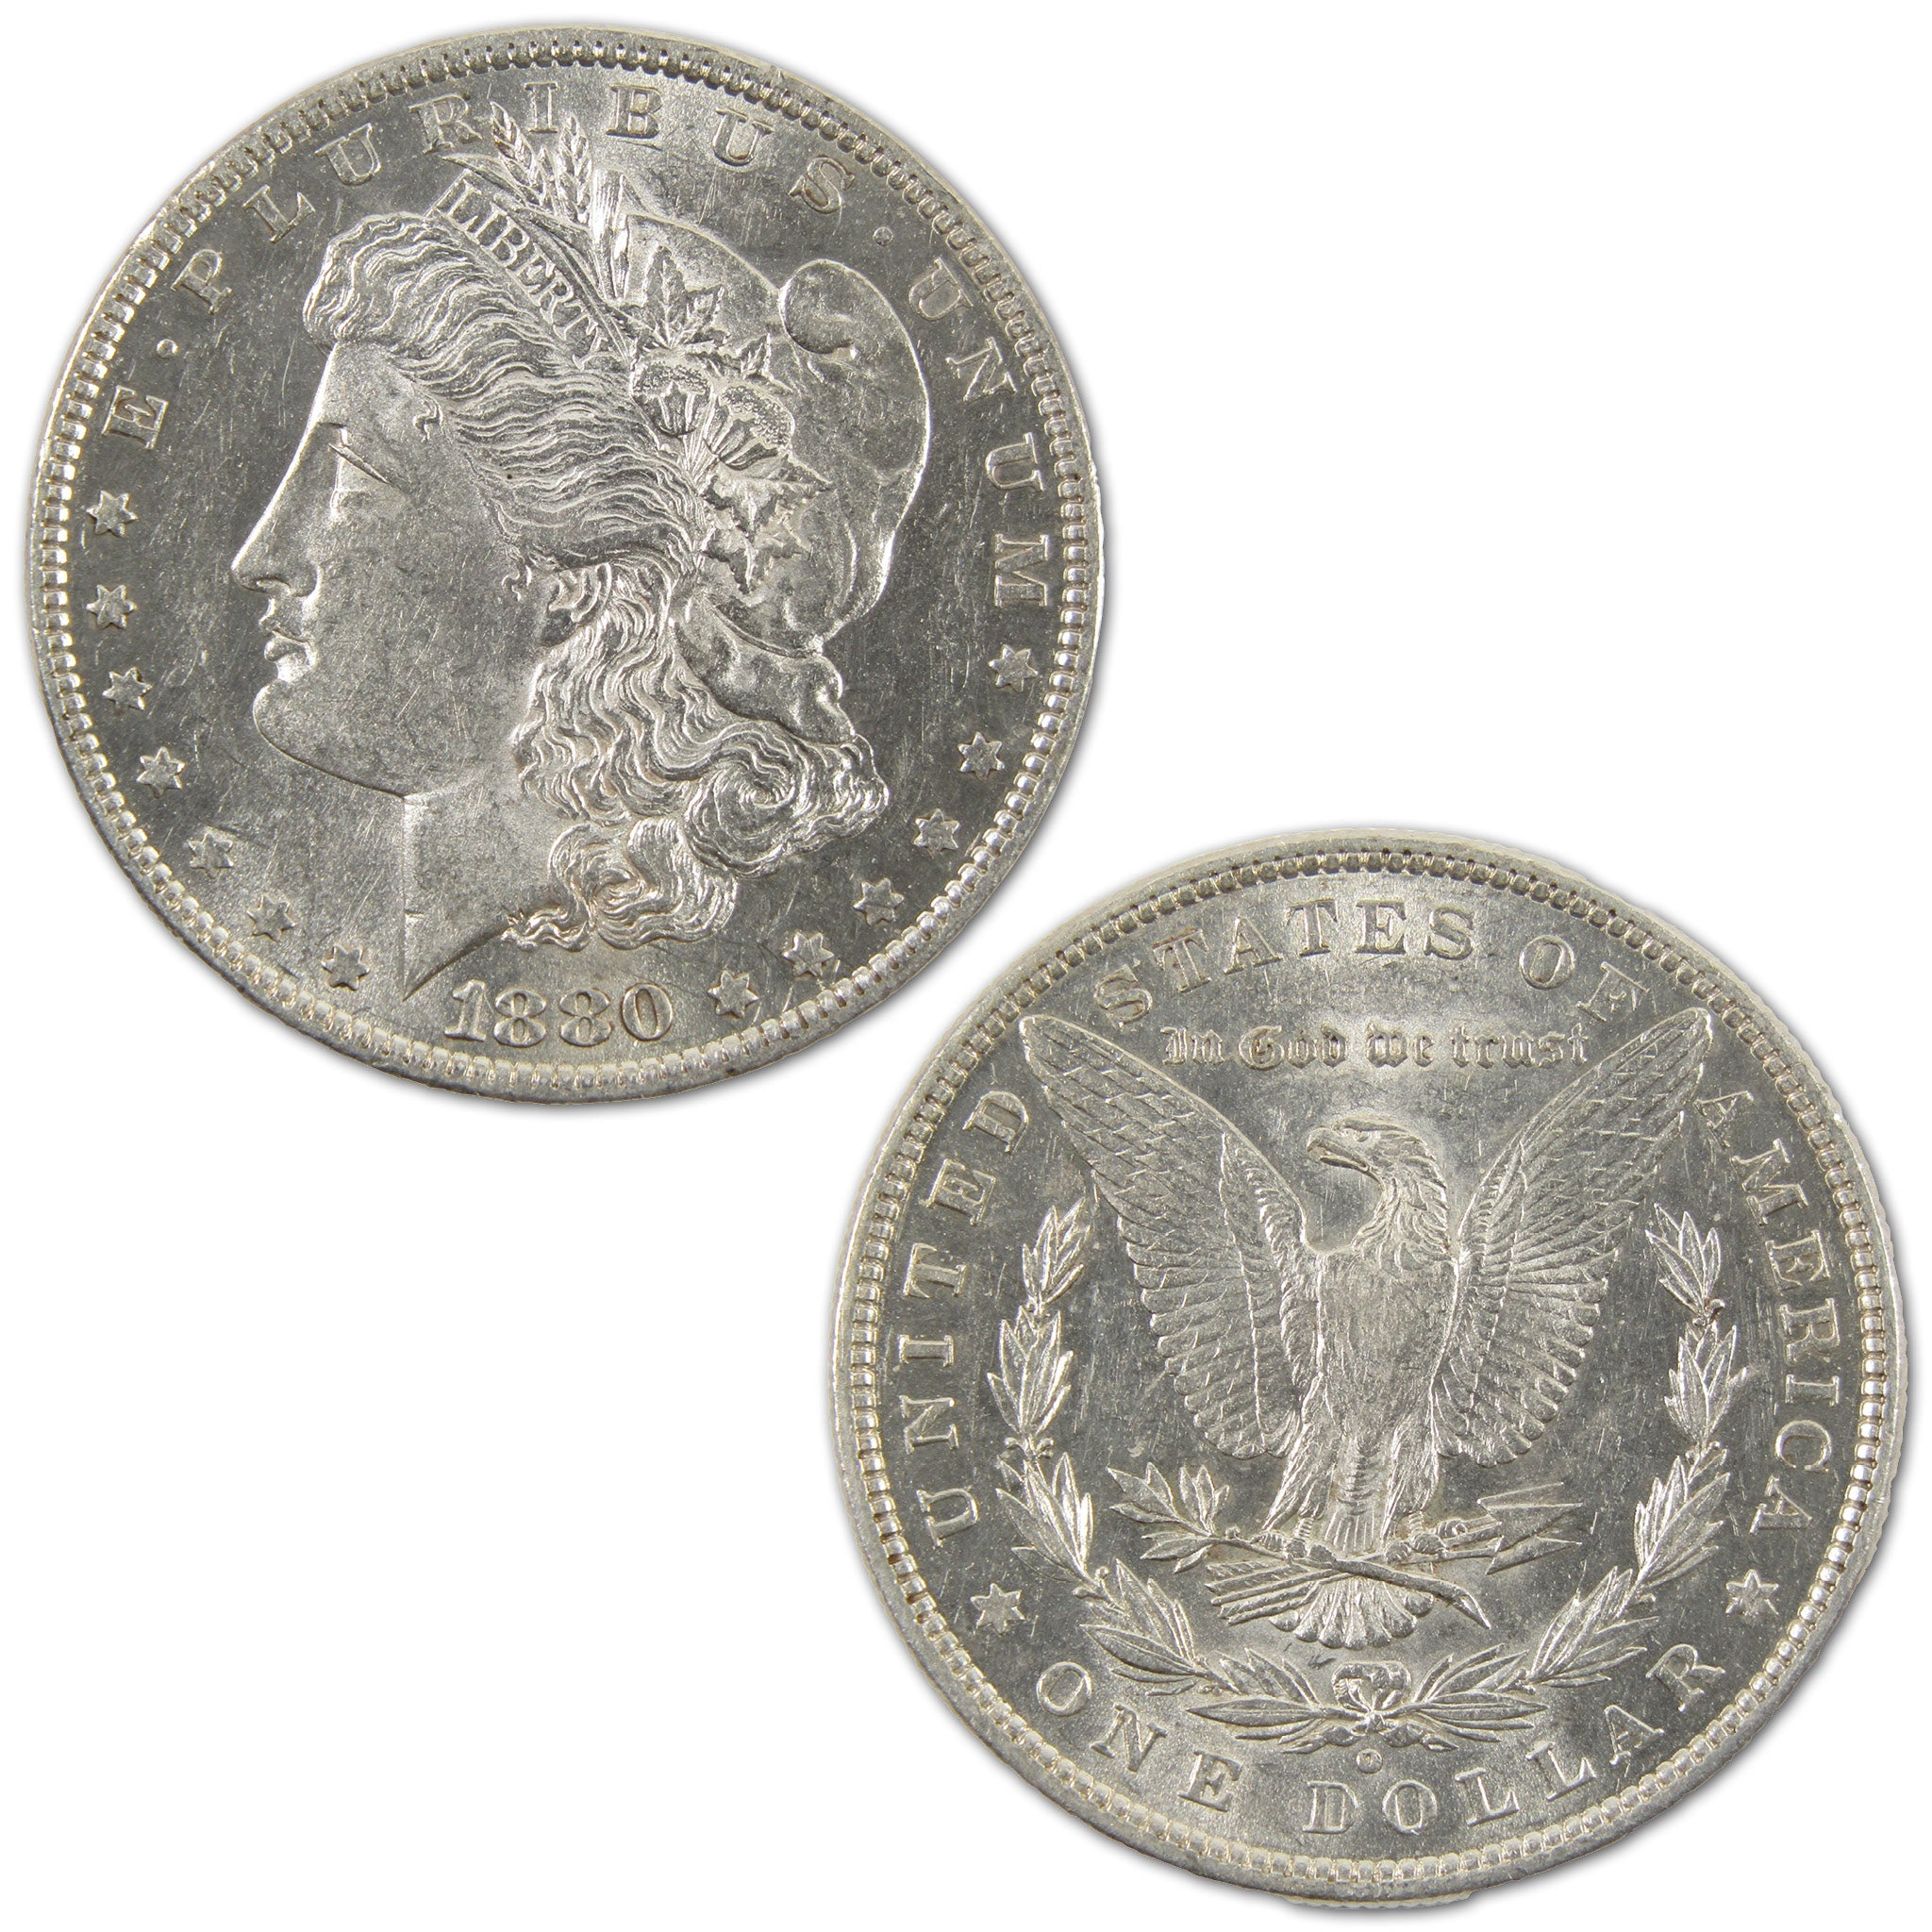 1880 O Morgan Dollar Borderline Uncirculated Silver $1 Coin SKU:I10503 - Morgan coin - Morgan silver dollar - Morgan silver dollar for sale - Profile Coins &amp; Collectibles